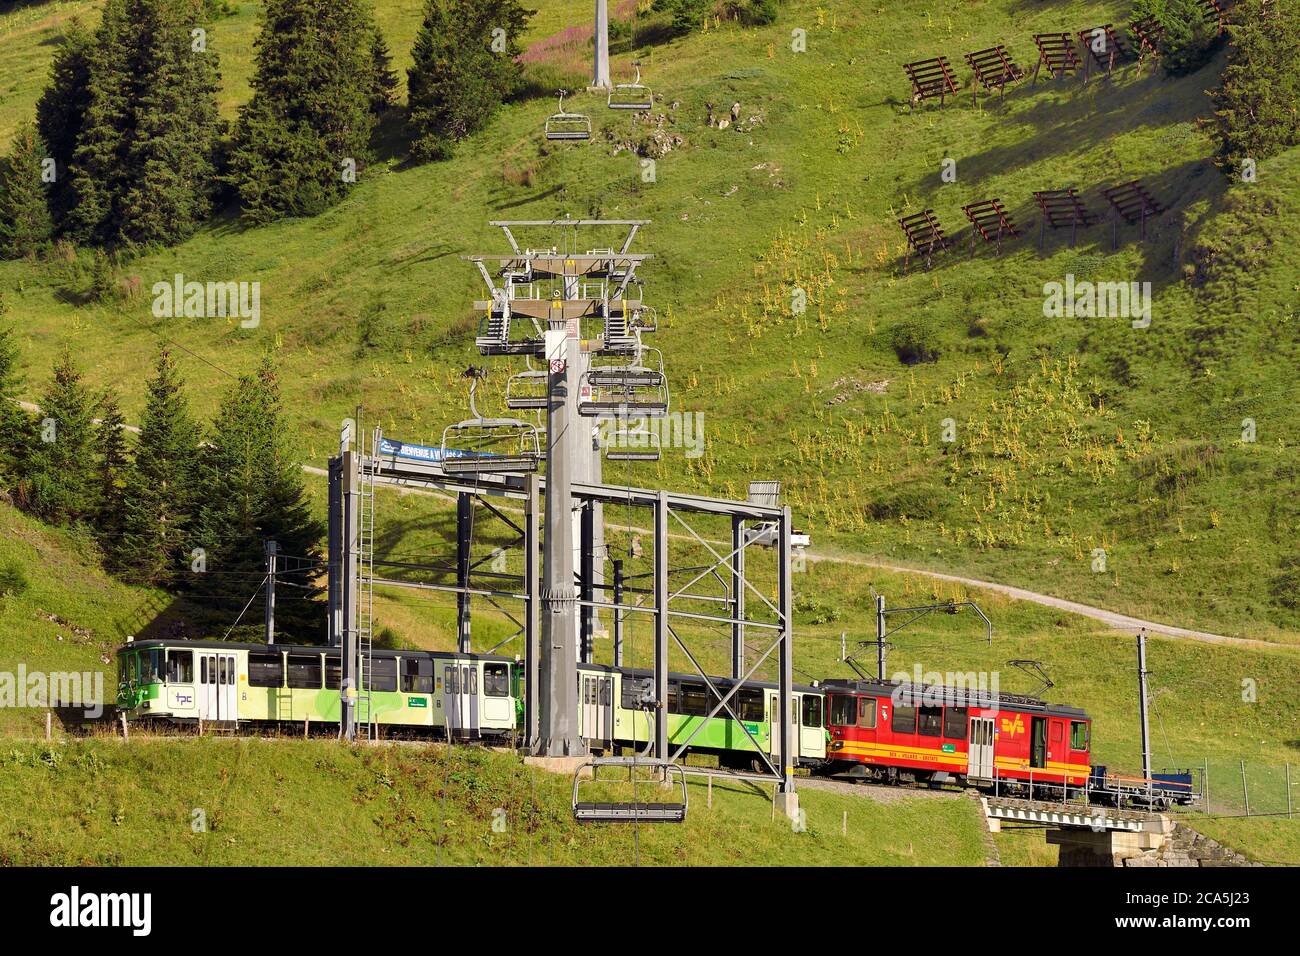 Switzerland, Canton of Vaud, Villars-sur-Ollon, train to the Bretaye pass station Stock Photo